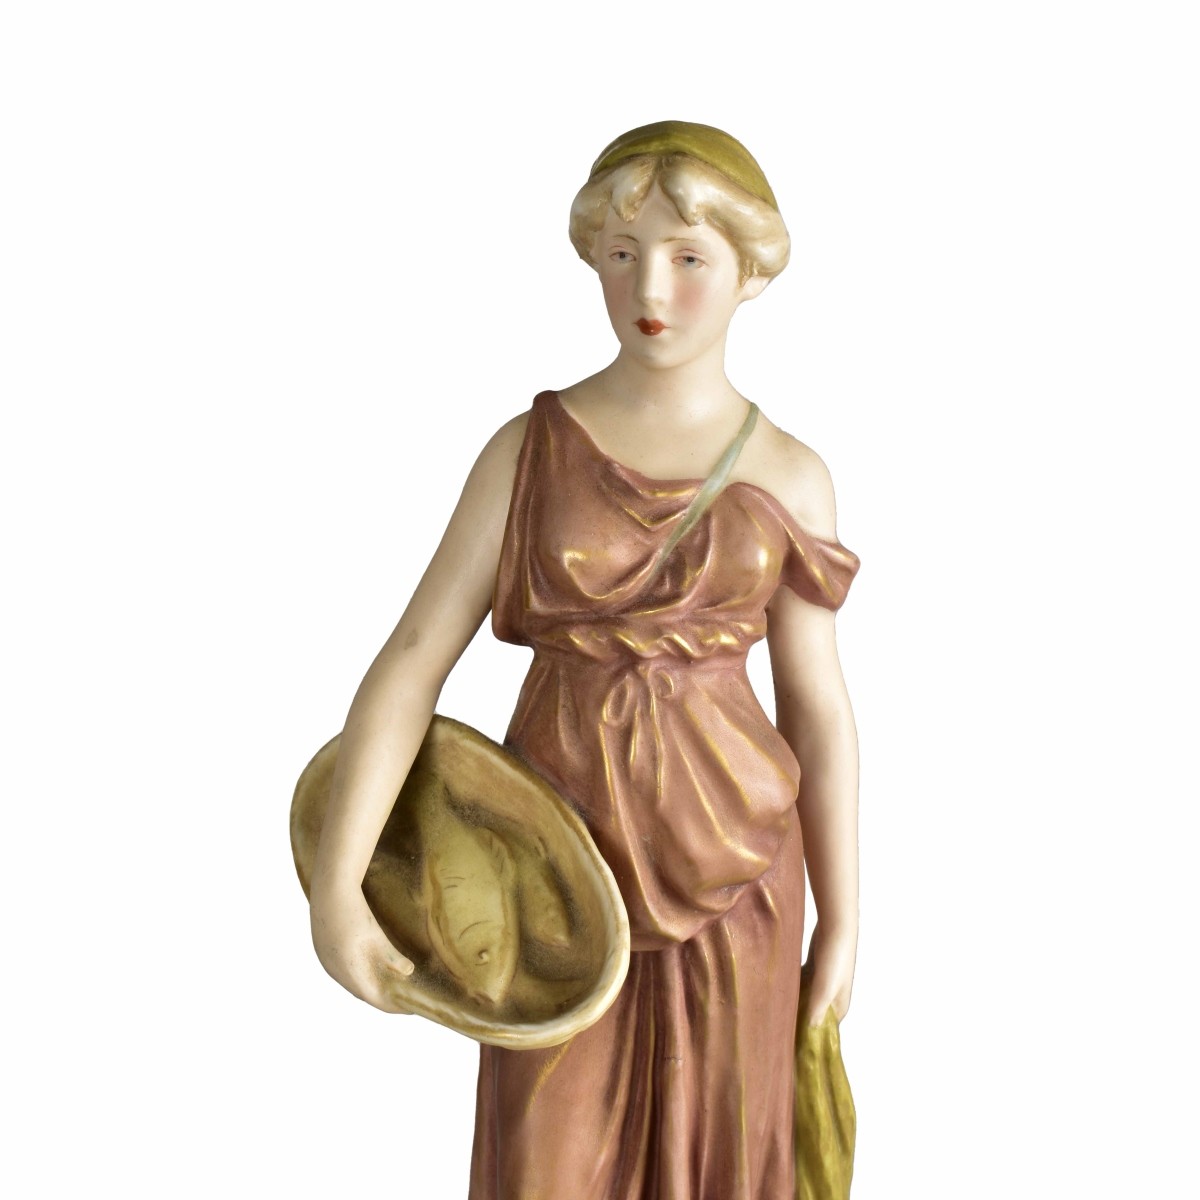 Antique Royal Dux Figurine